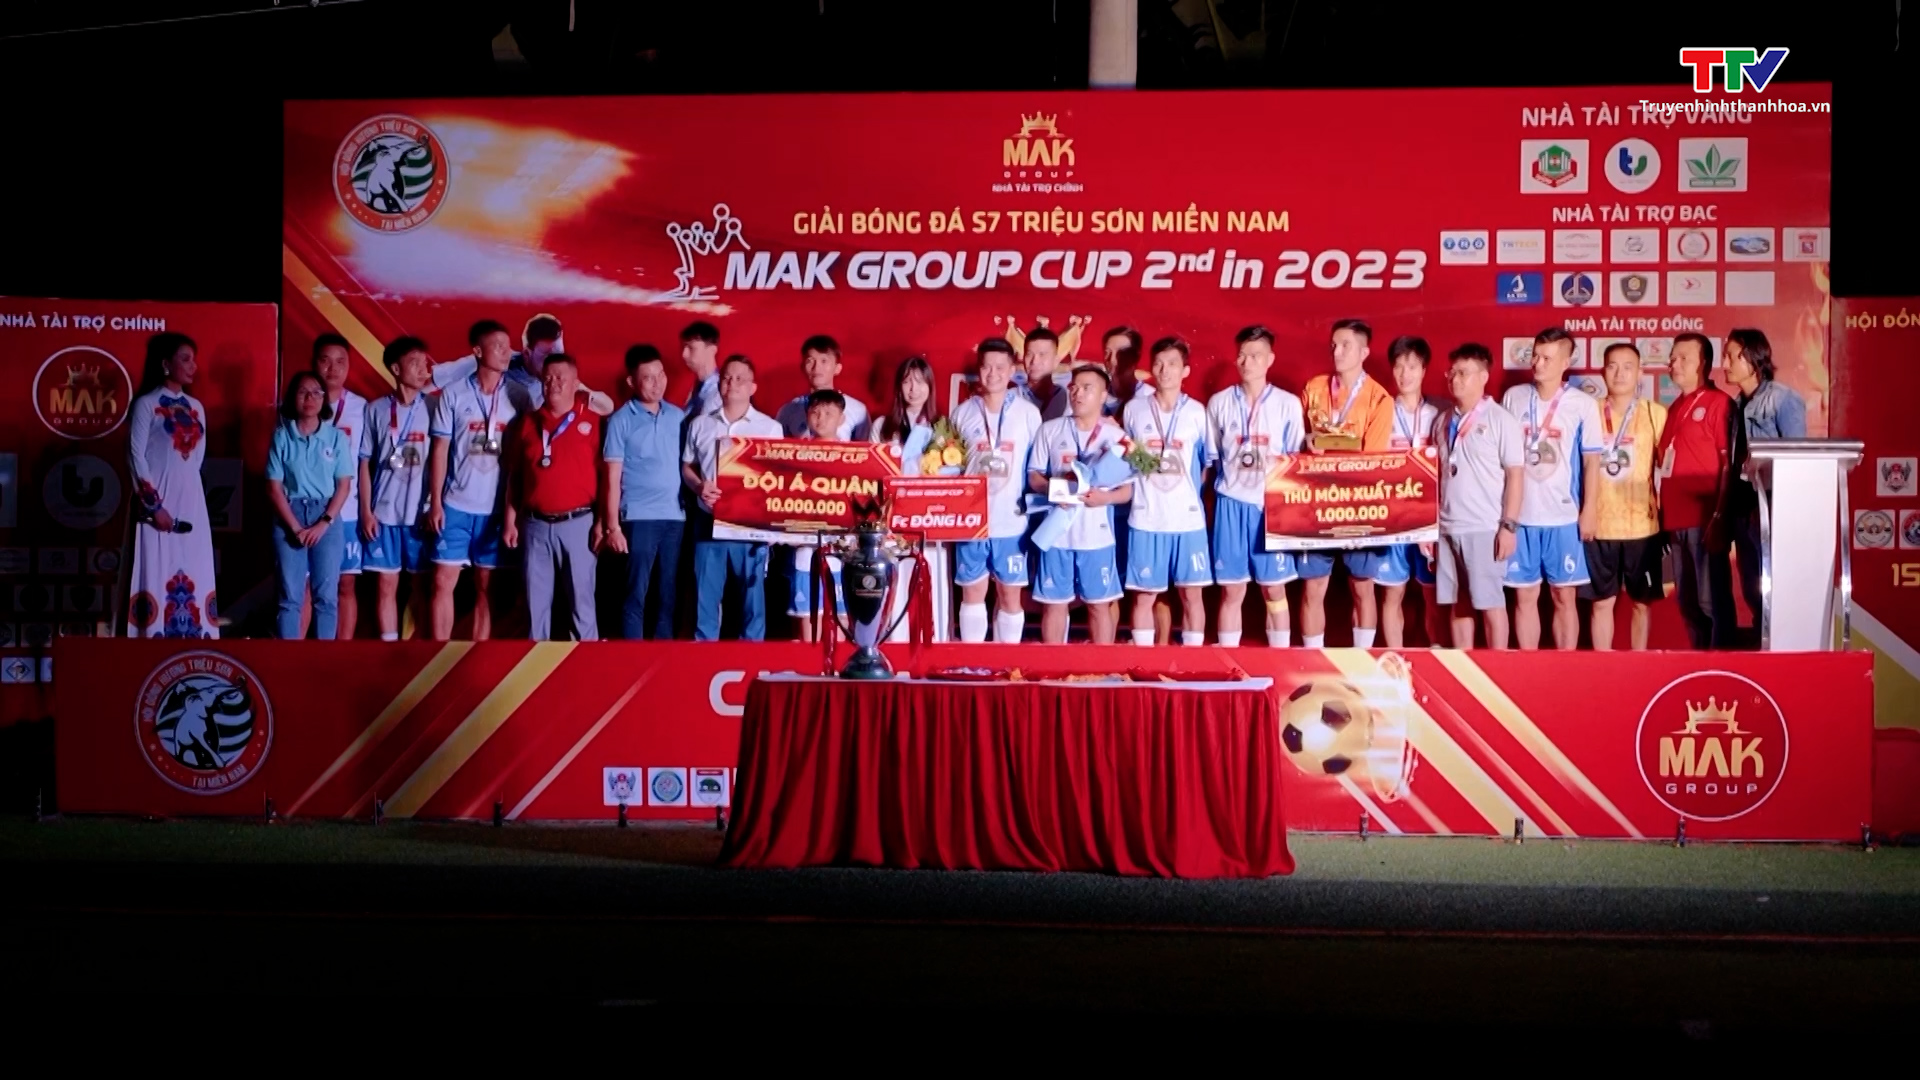 Giải bóng đá sân 7 huyện Triệu Sơn tại miền Nam tranh Cup Mak Group lần thứ 2, năm 2023 - Ảnh 4.